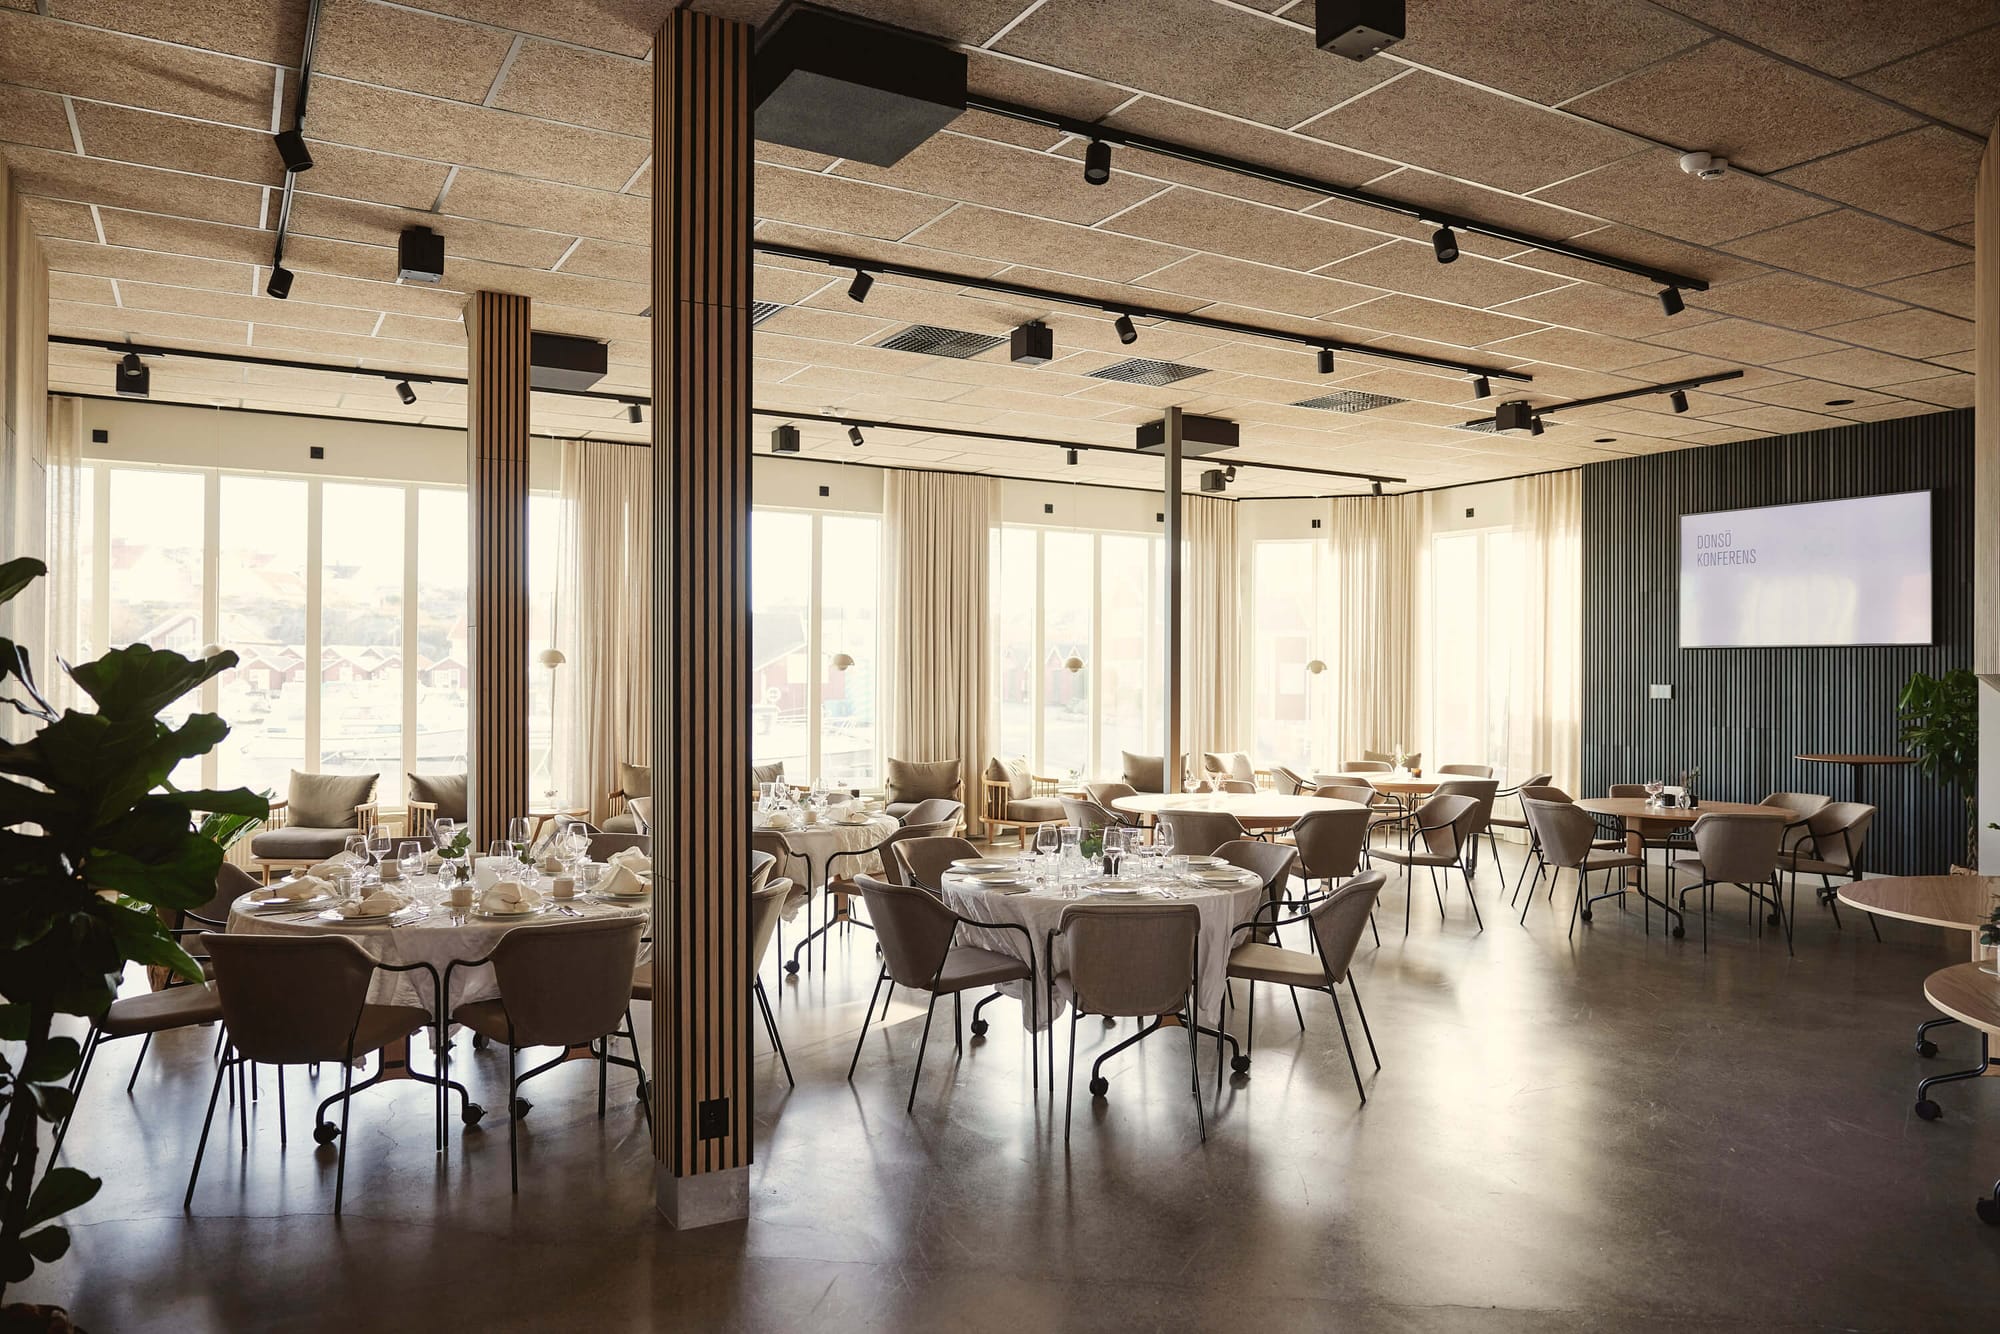 Donsö Konferens ligger i Göteborgs skärgård och erbjuder en vacker bankettsal